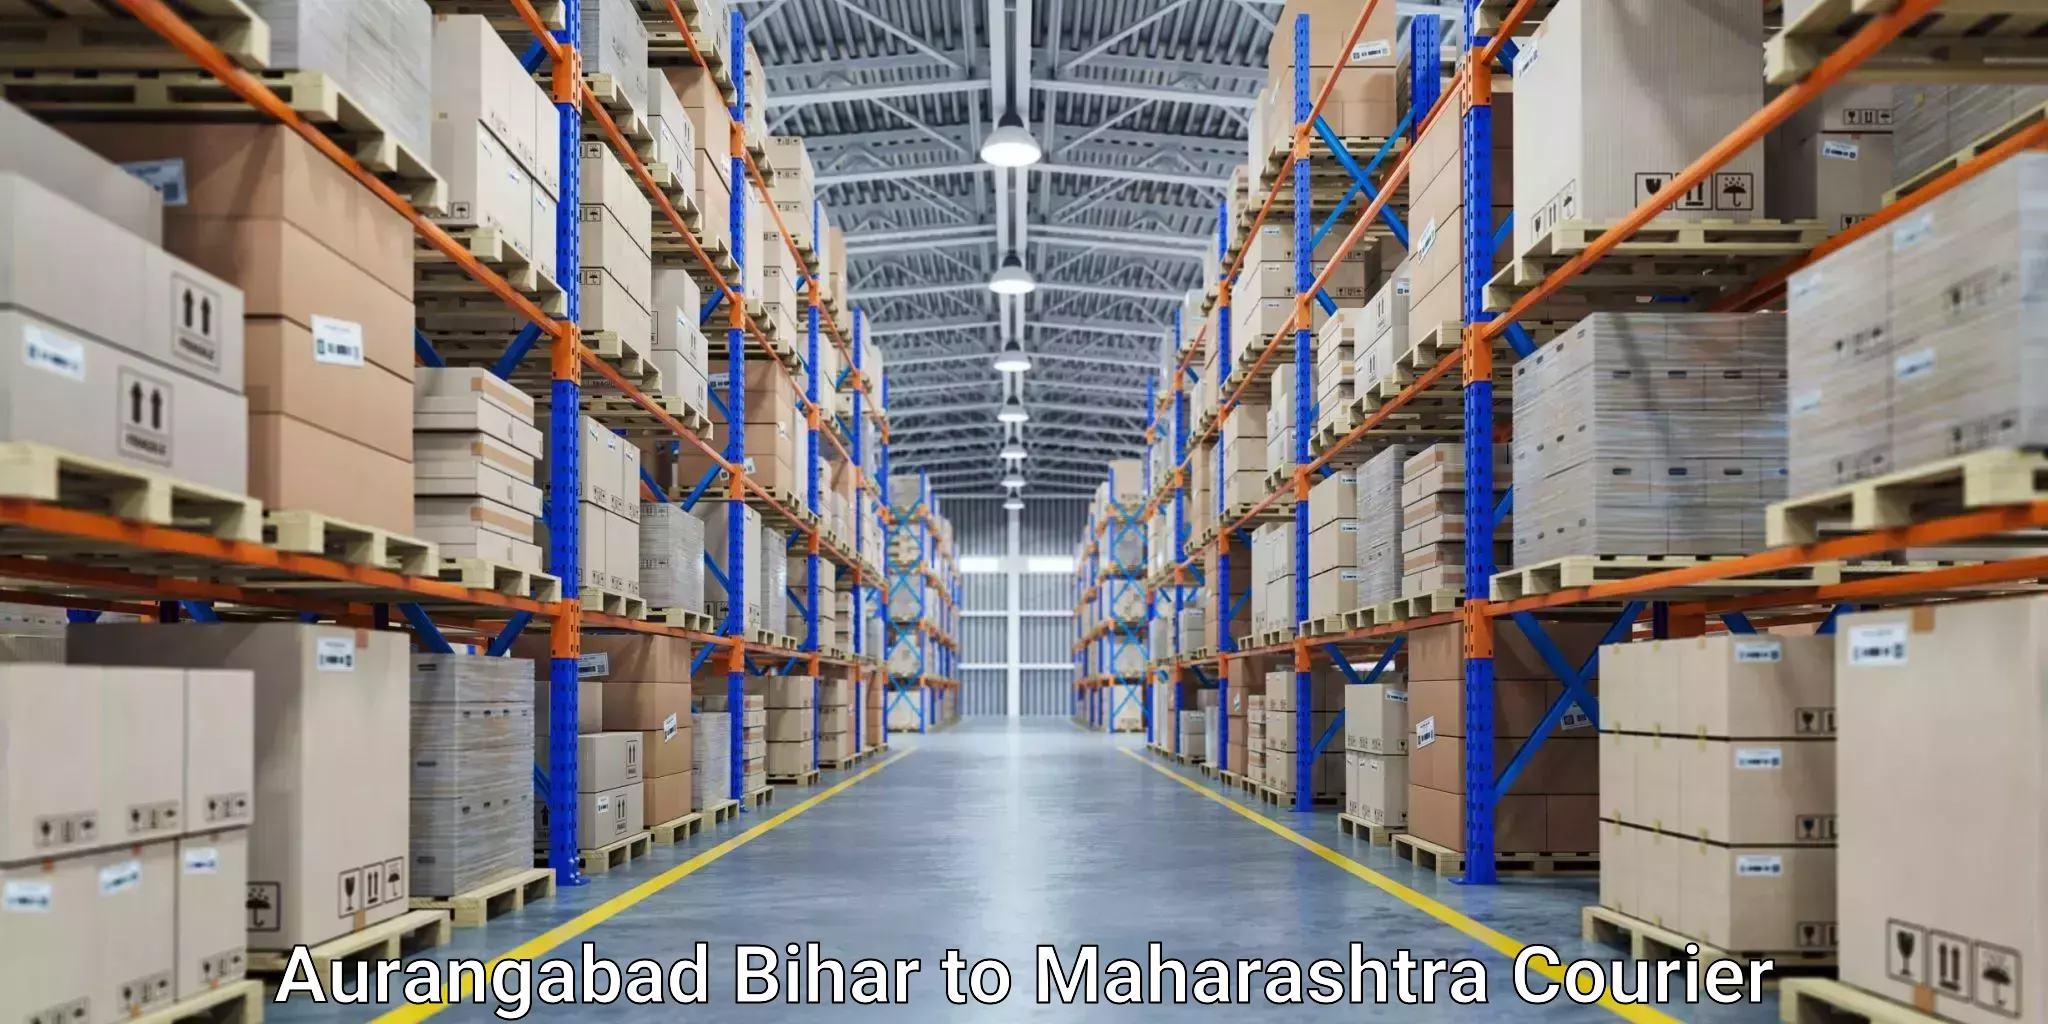 Next-generation courier services Aurangabad Bihar to Mantha